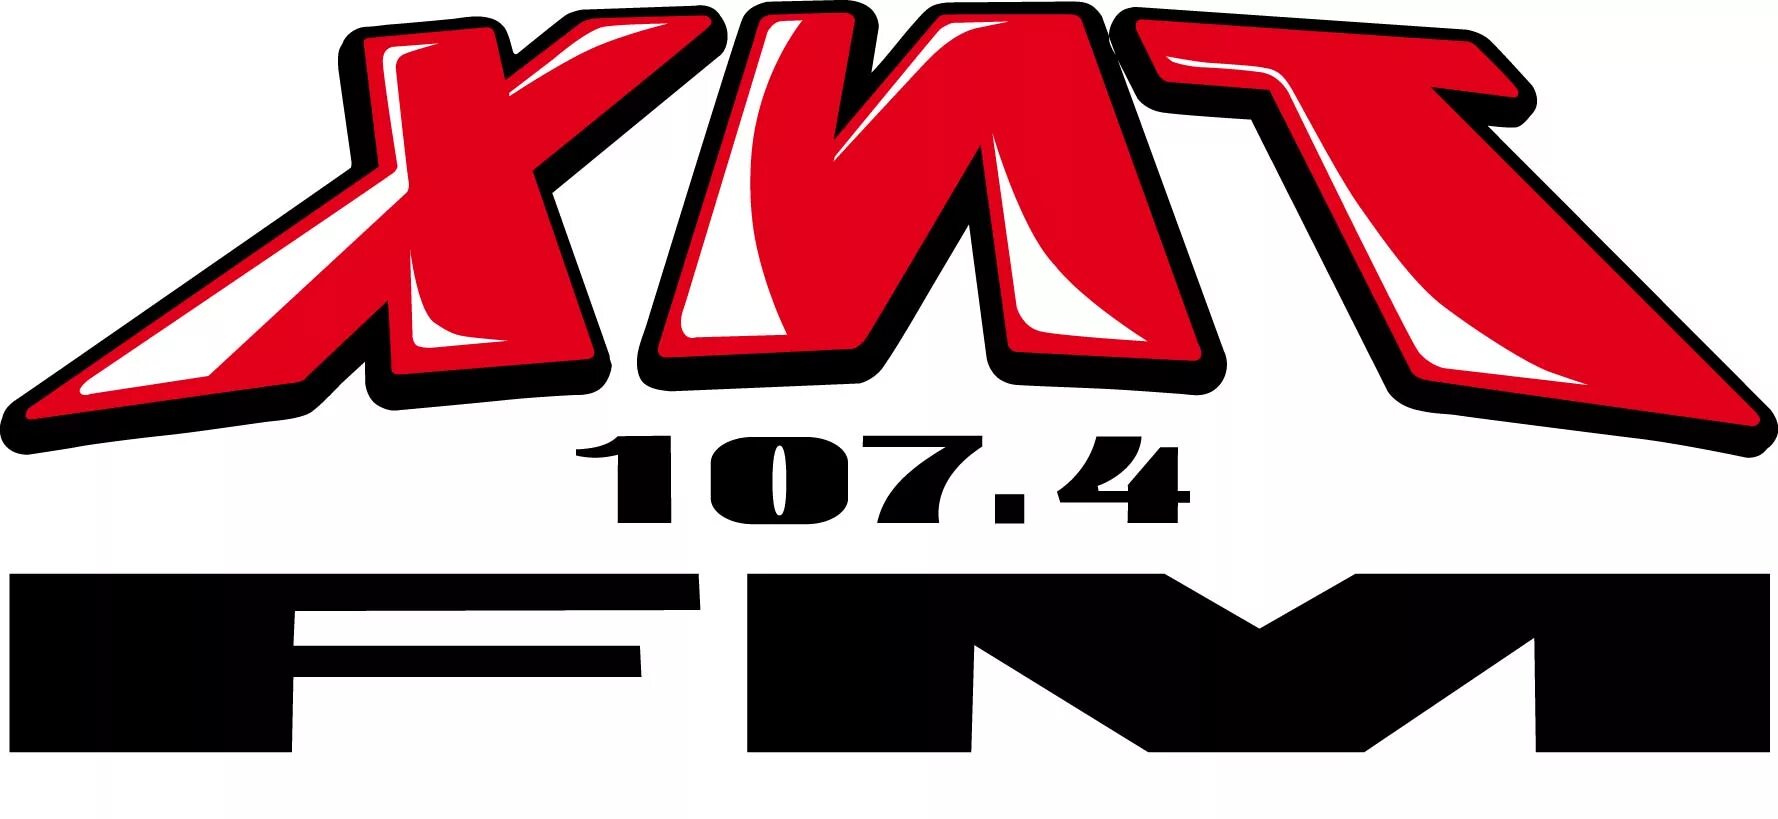 Логотип радиостанции хит ФМ. Хит fm 107.4. Радио хит fm логотип. Хиты радиостанции хит ФМ. Хит фм екатеринбург